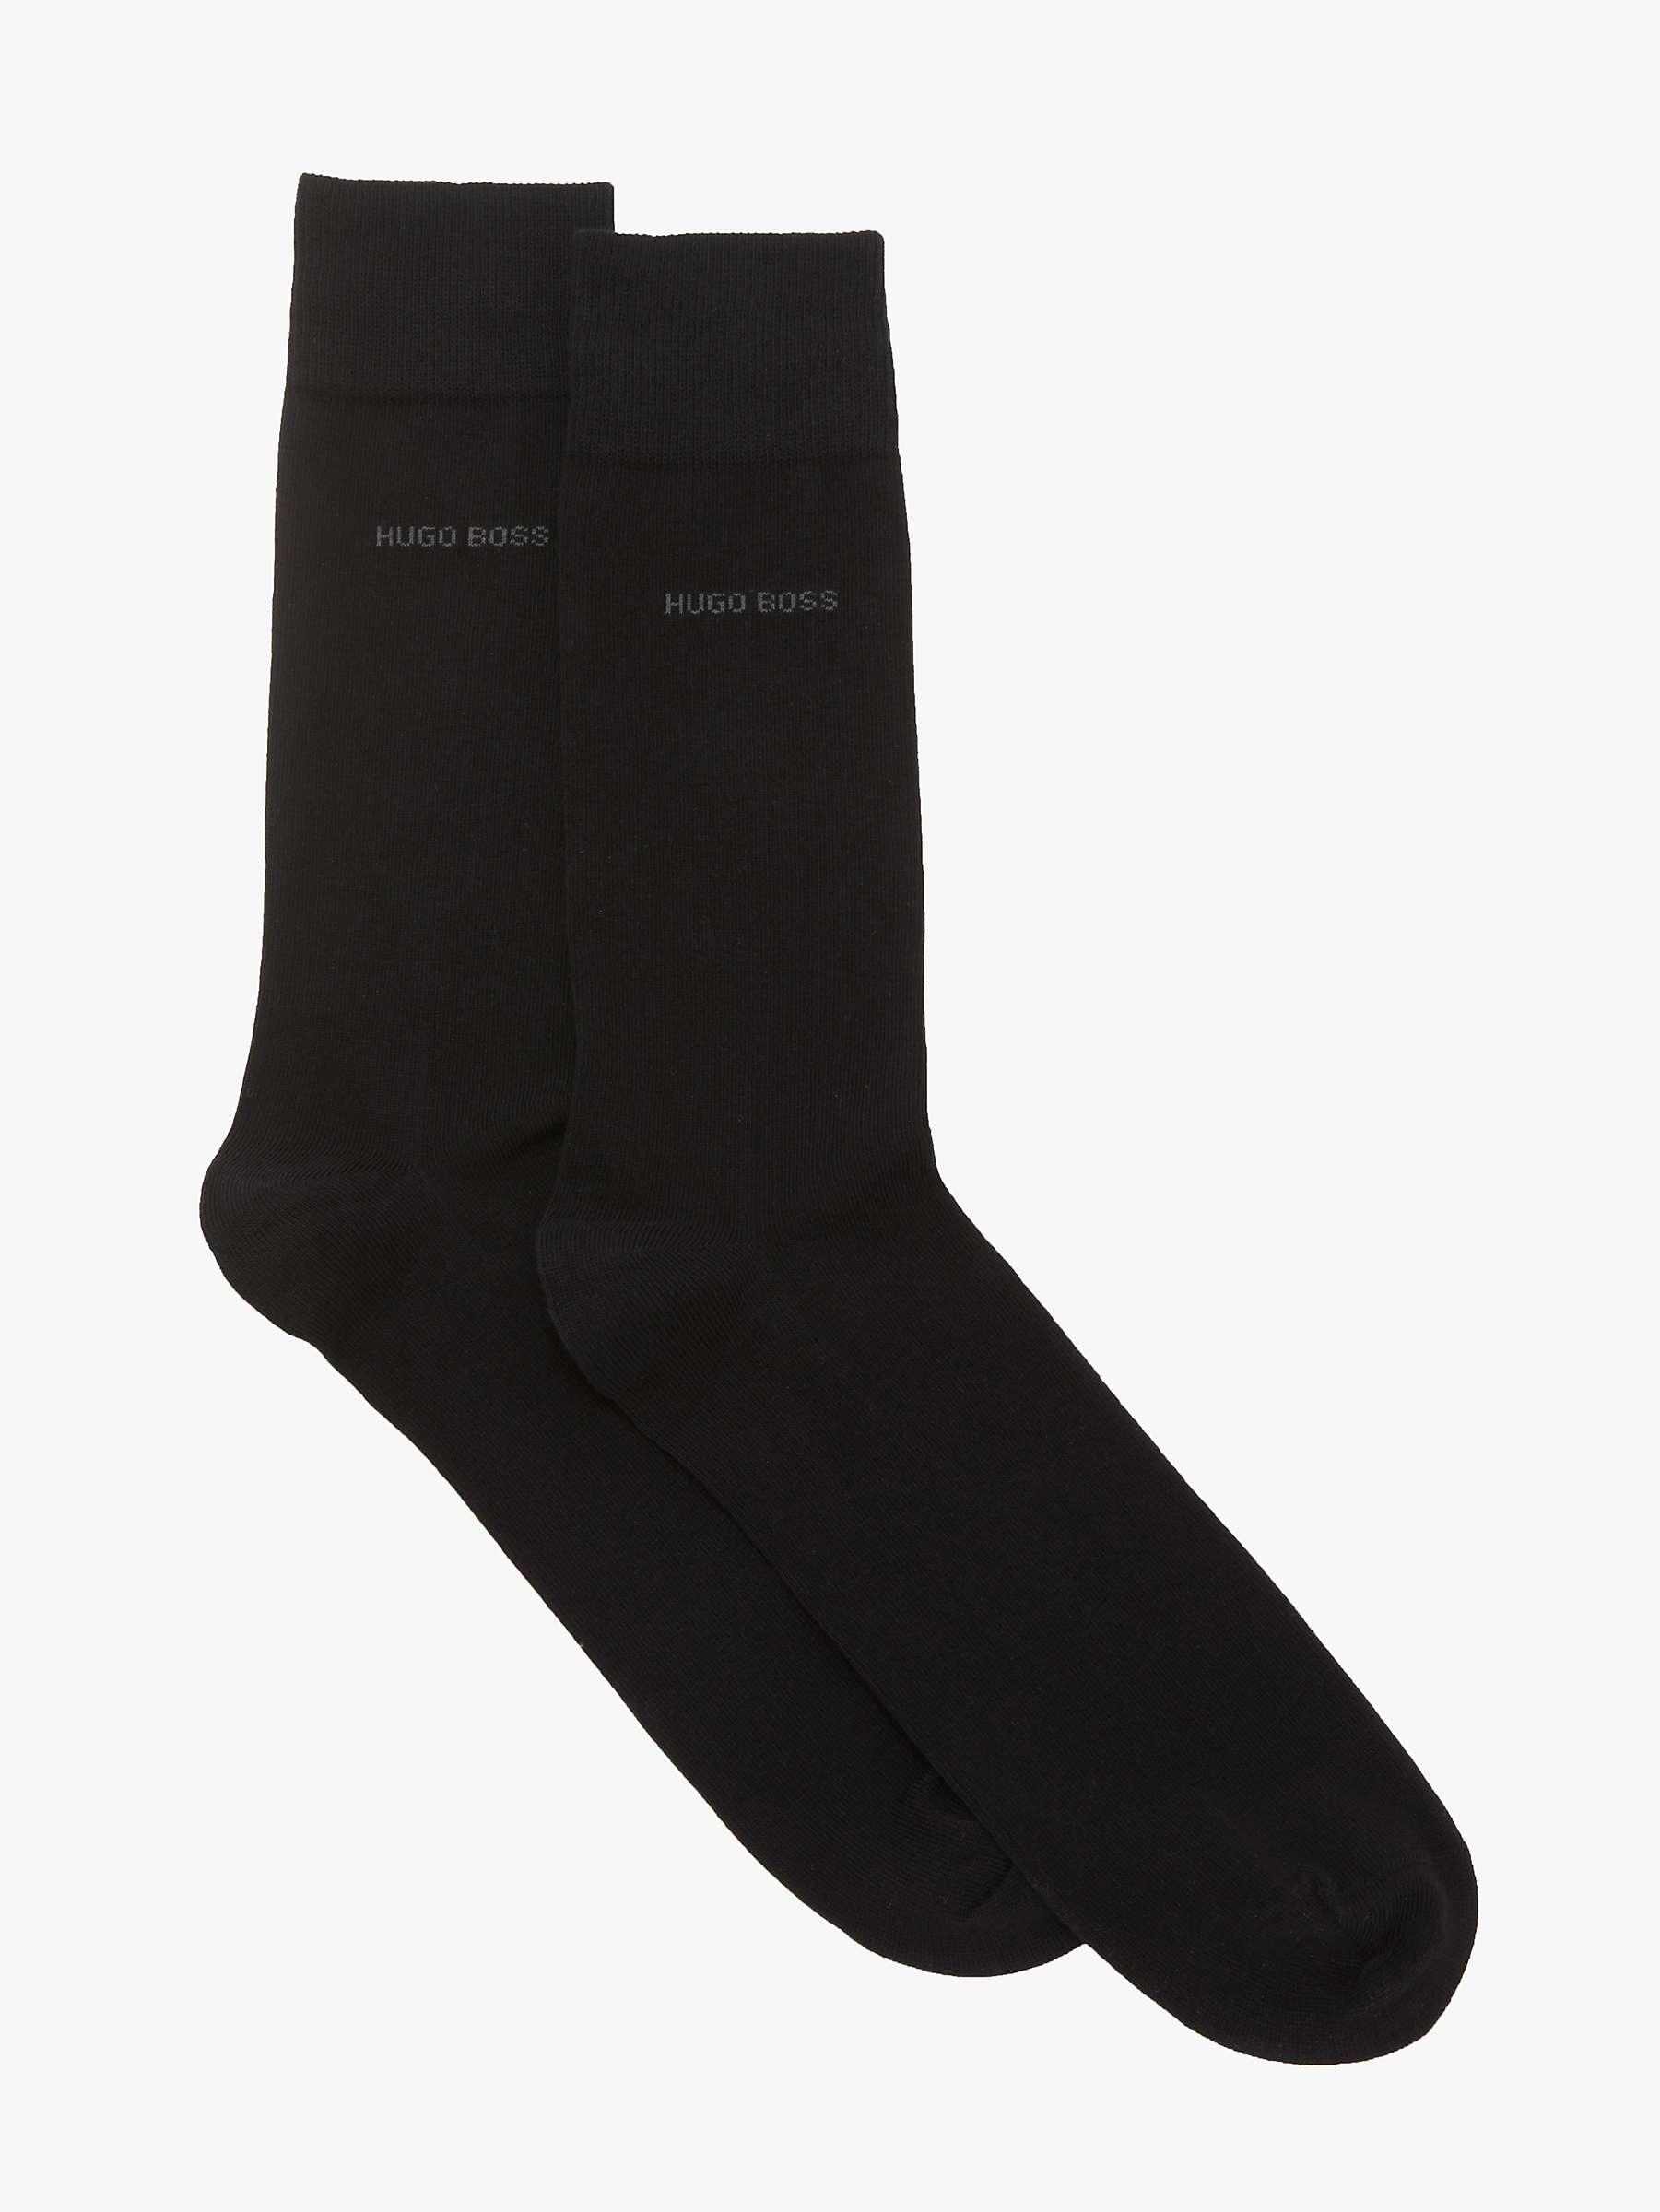 Buy BOSS Plain Socks, Pack of 2 Online at johnlewis.com